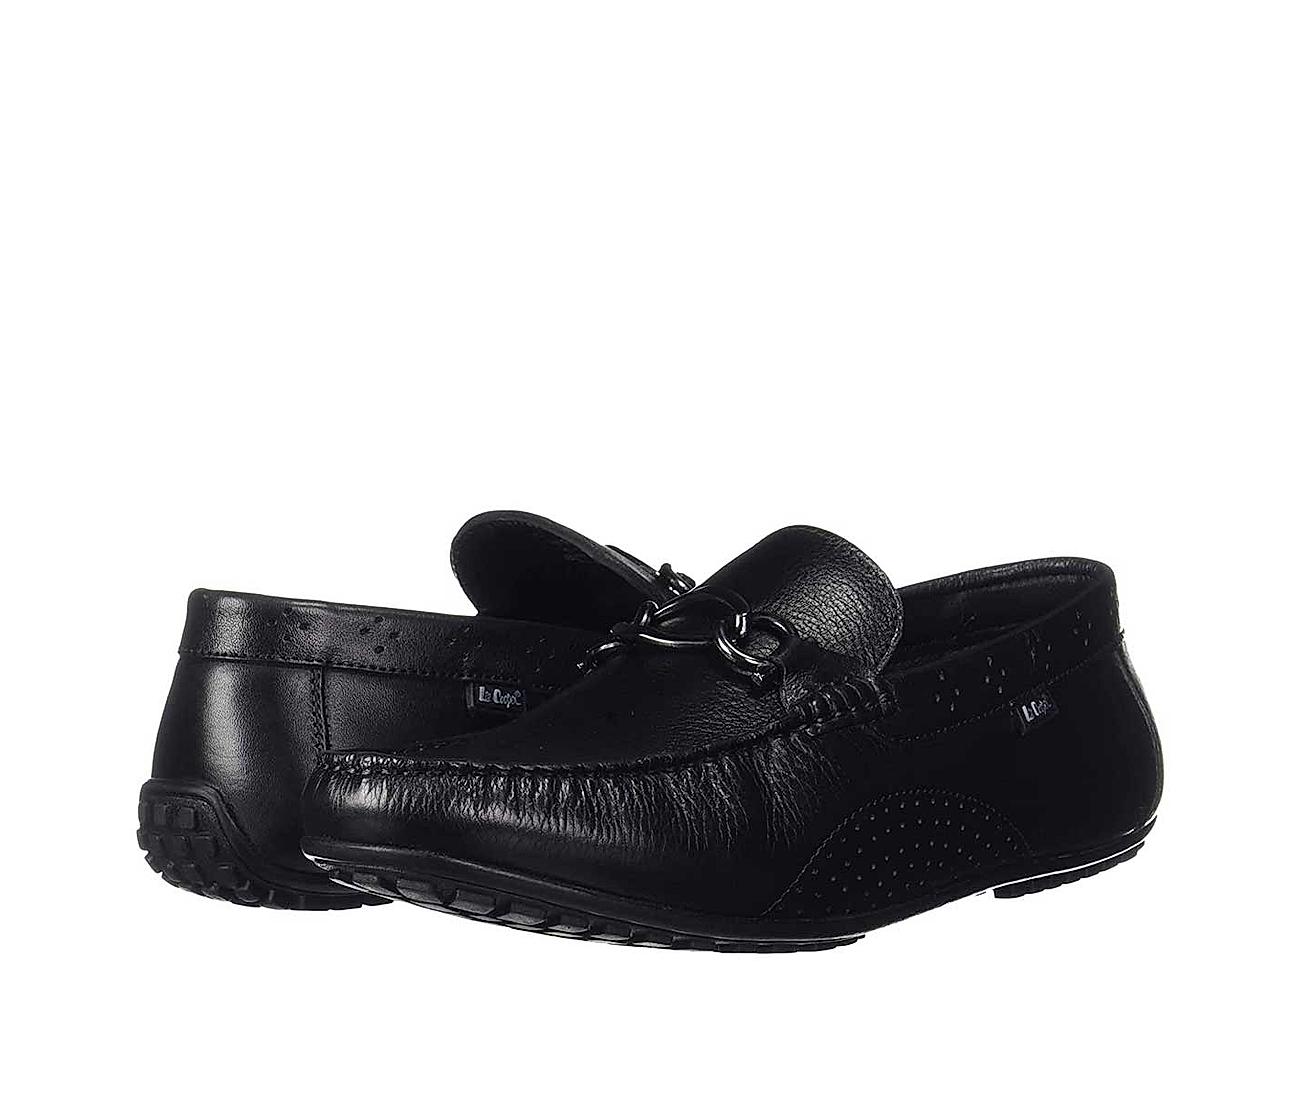 Buy Lee Cooper Black Mens Leather Formal Shoe Online at Regal Shoes |8325473